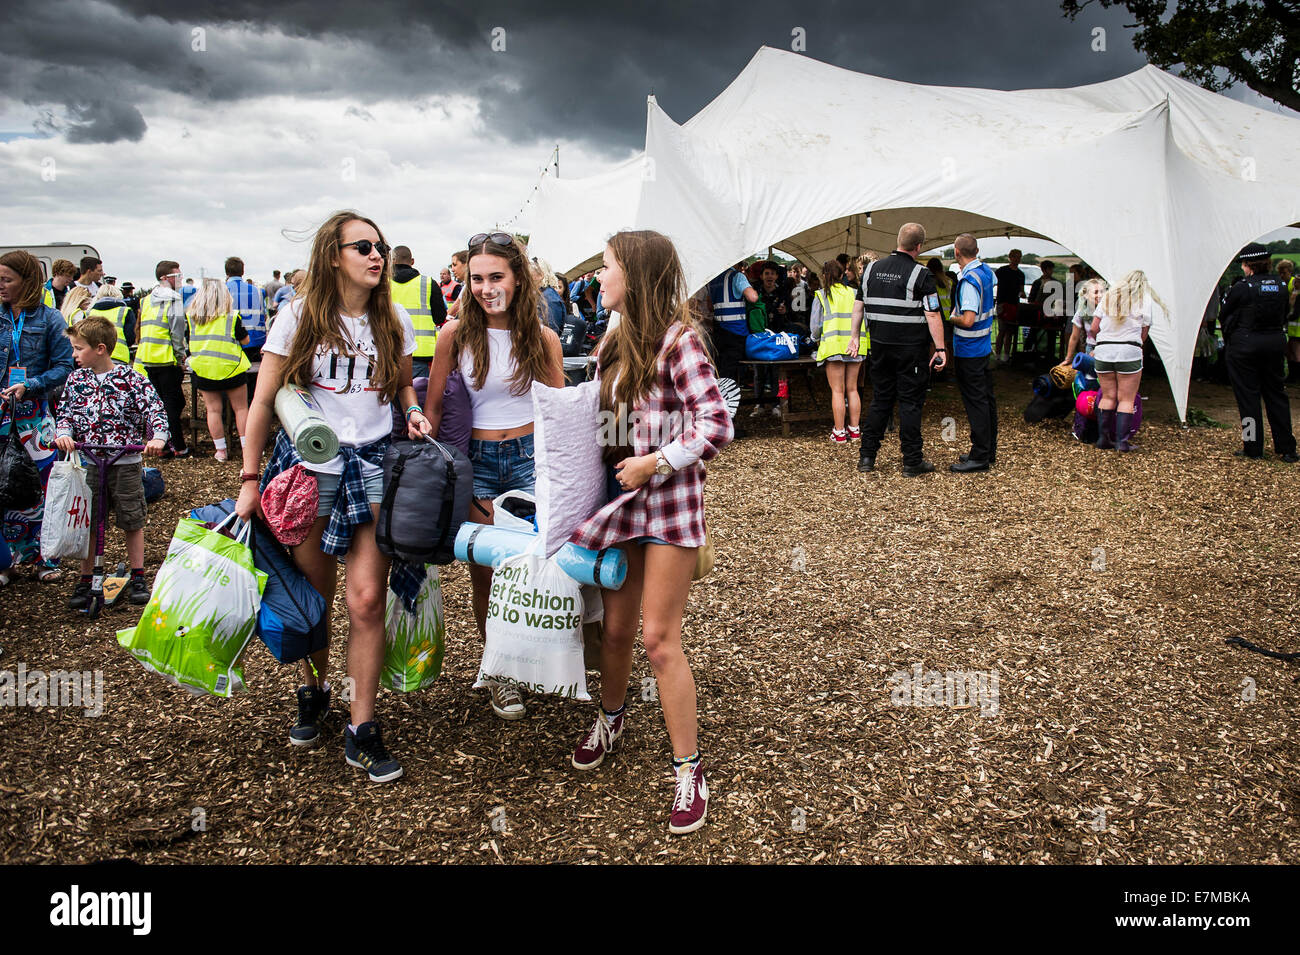 Espectadores llegar al Festival Brownstock en Essex. Foto de stock